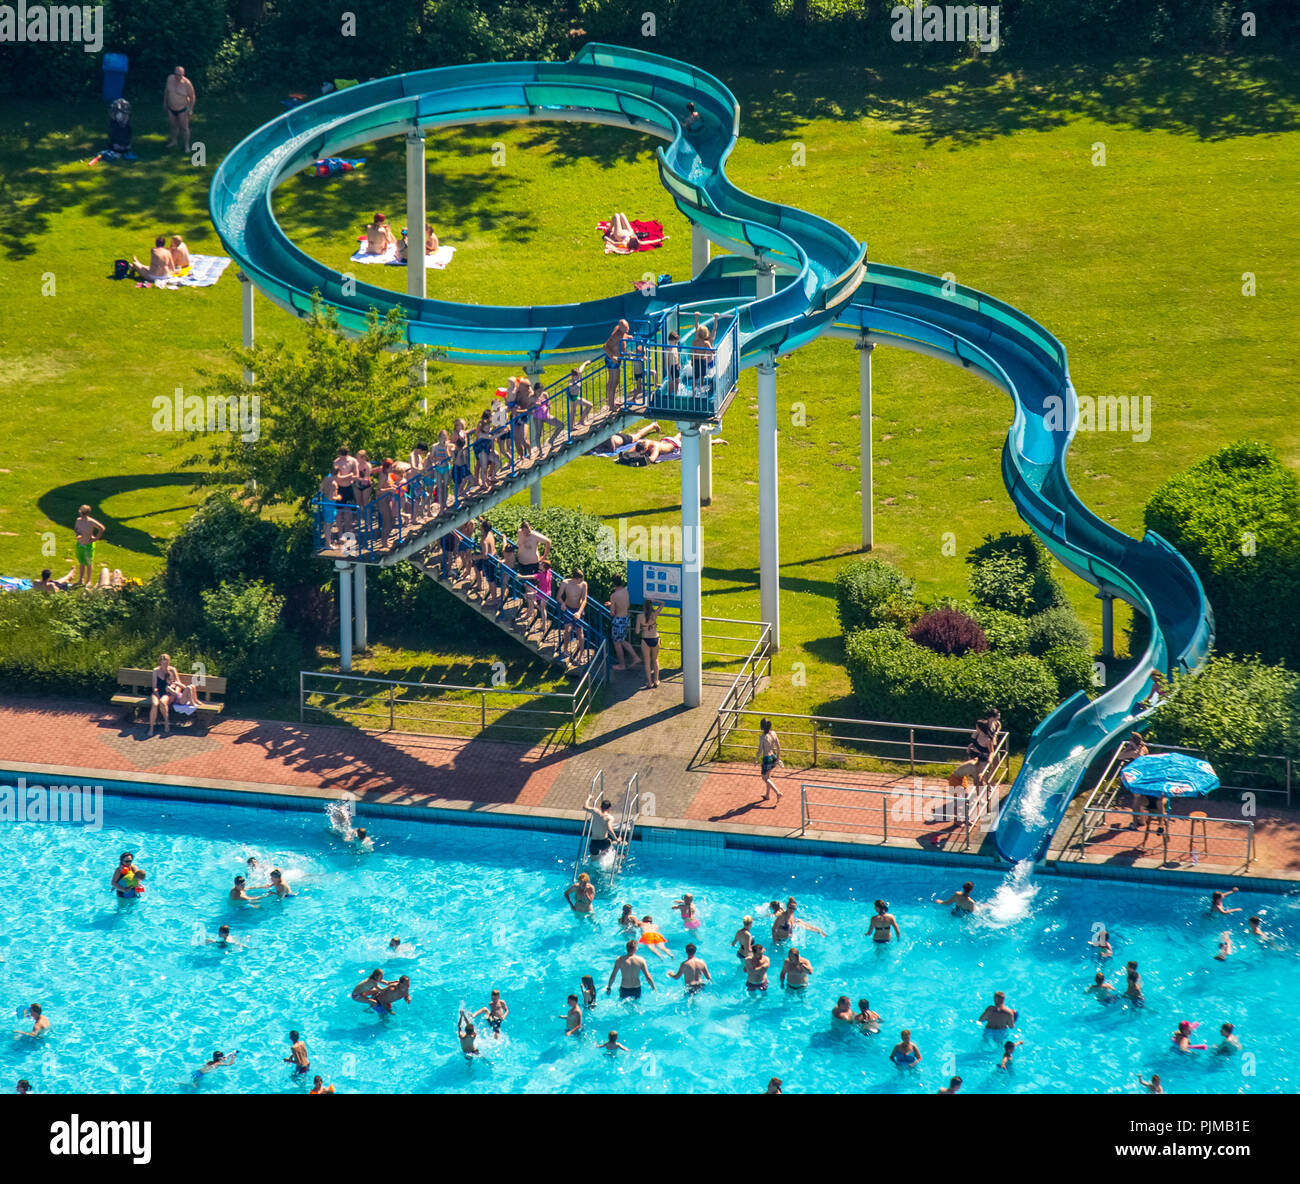 67m water slide, outdoor pool Heljens Bad, Heiligenhaus, Ruhr area, North Rhine-Westphalia, Germany Stock Photo